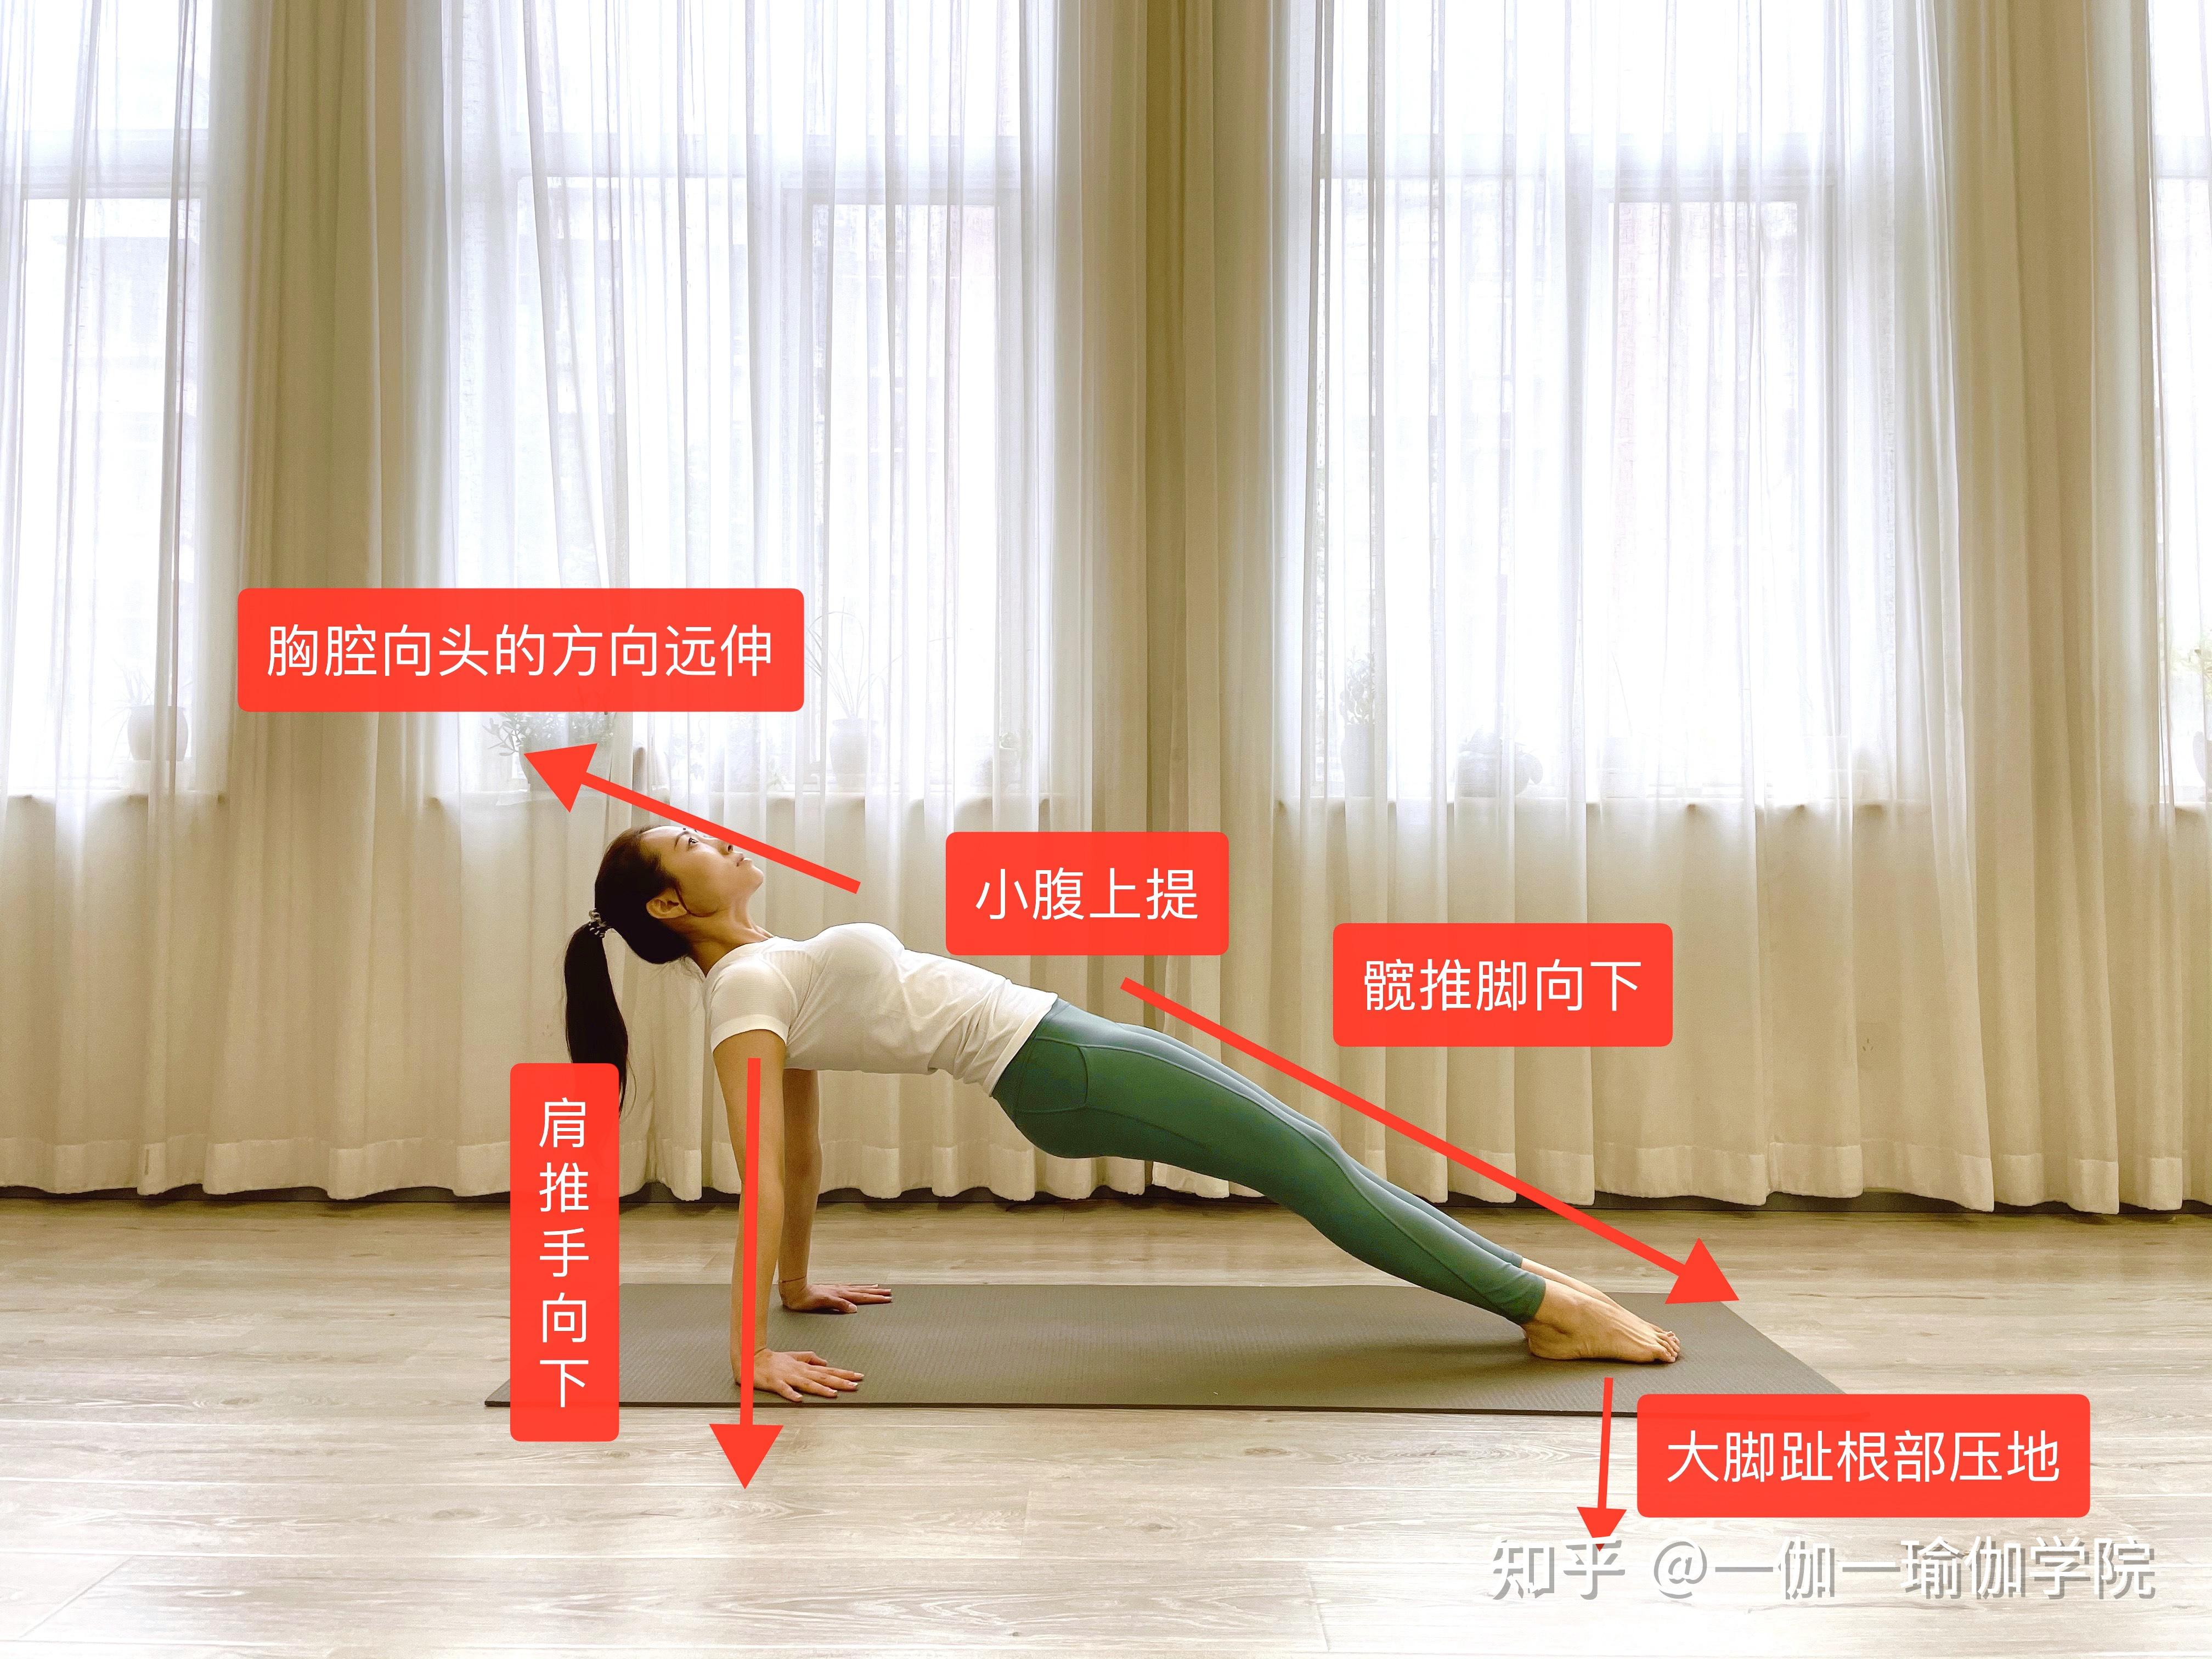 驼背,斜方肌严重,骨盆前倾,小腿粗,该怎么样安排瑜伽内容?